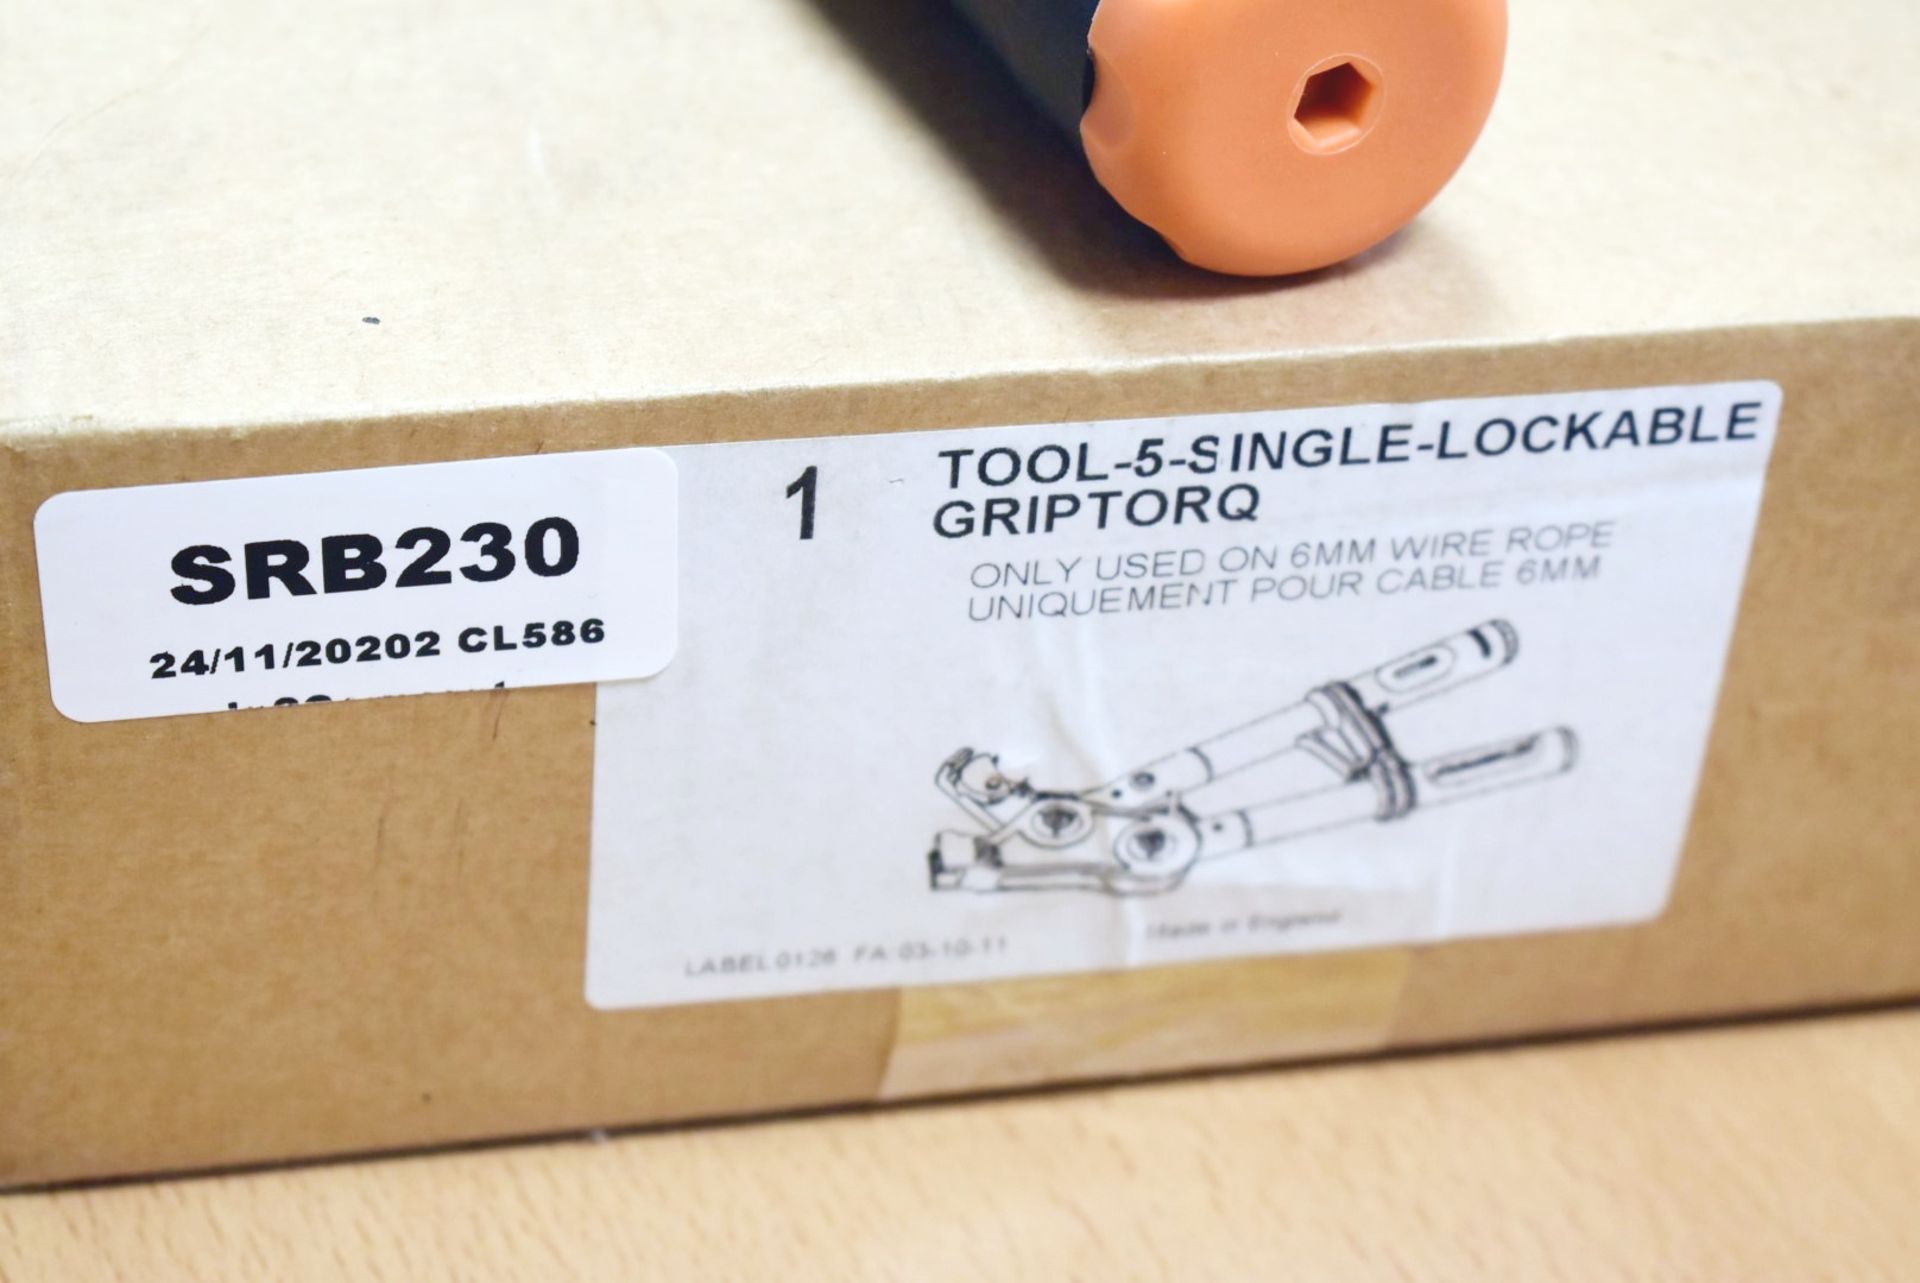 1 x Griptorq Lockable Gripper Tool - Max Load 400kg - Image 5 of 6